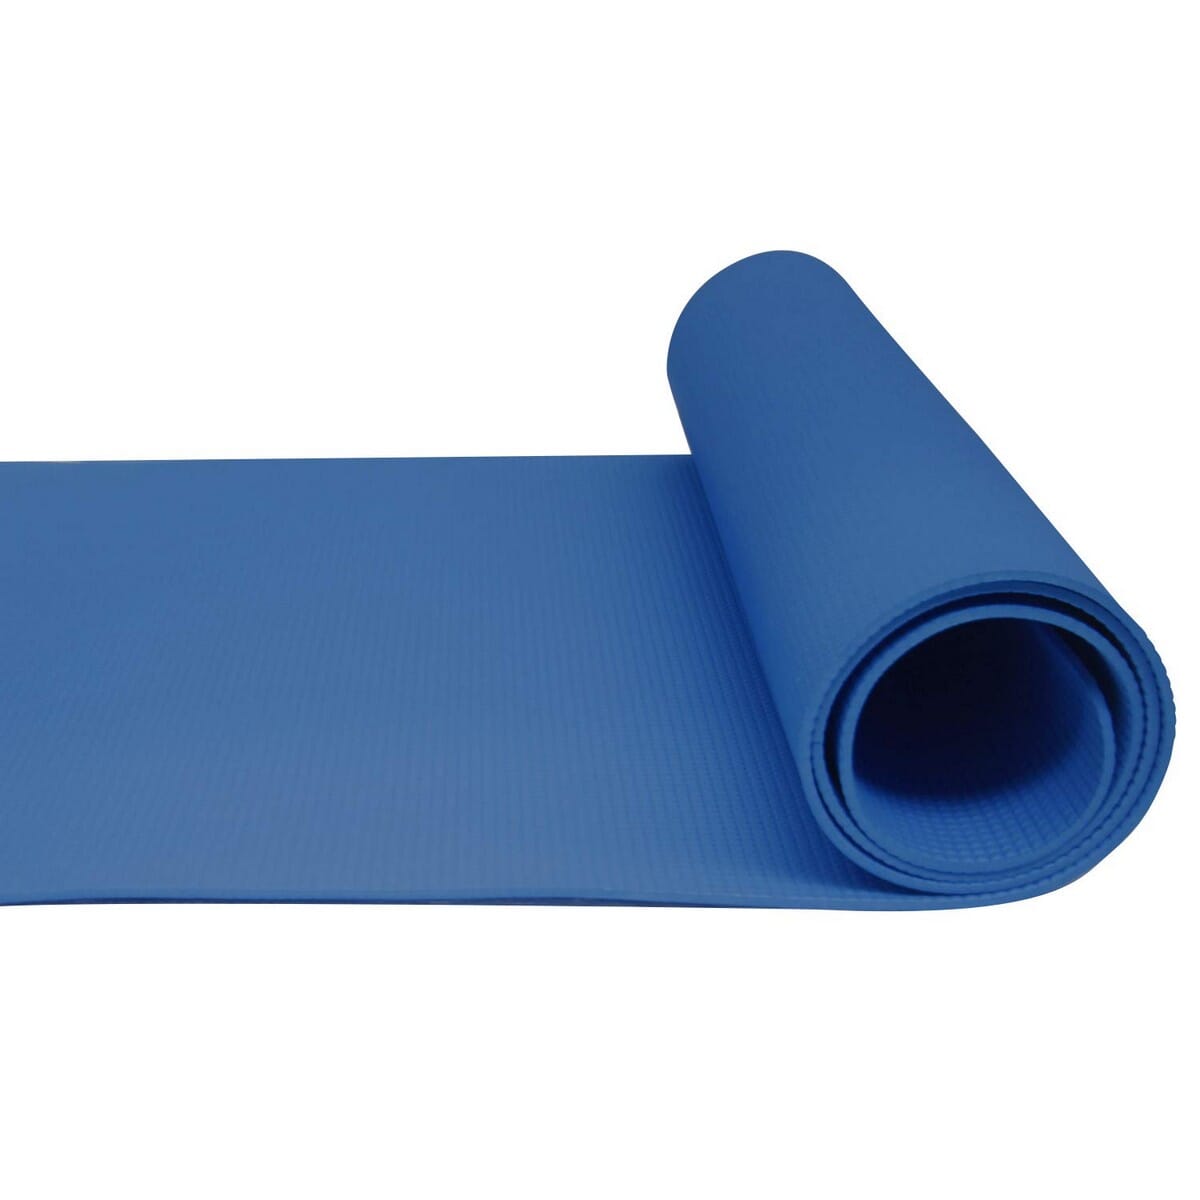 Prix KM SPORT Tapis De Yoga Épais 10 Mm 165 X 60 Cm Bleu Algerie